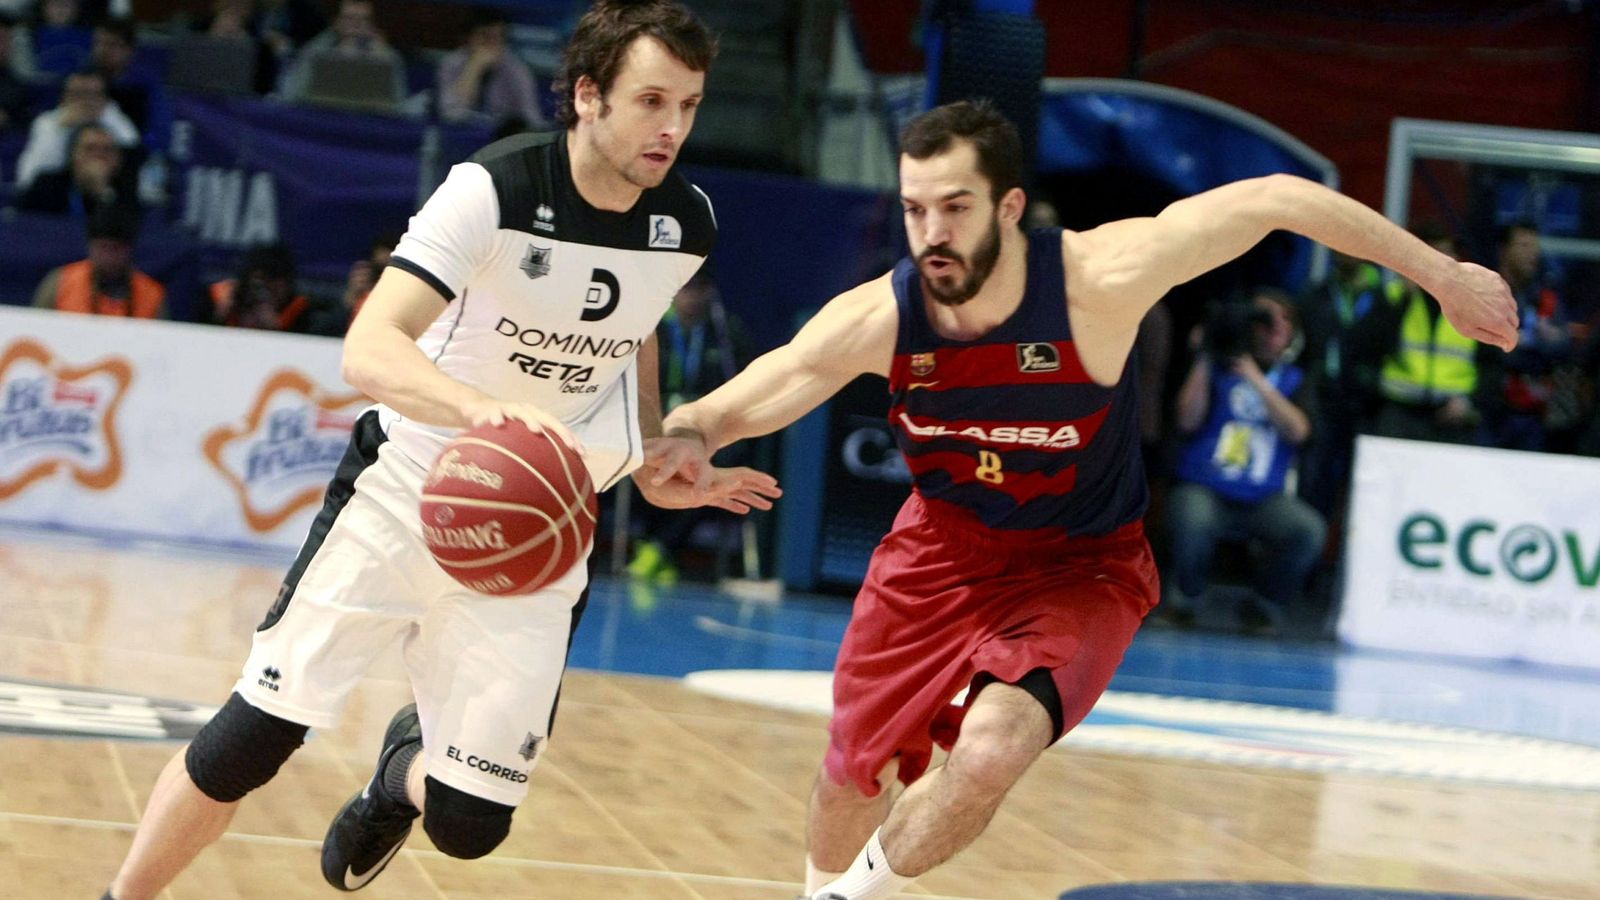 Foto: Raül López juega en el Dominion Bilbao Basket desde 2011 (Cabalar/Efe)